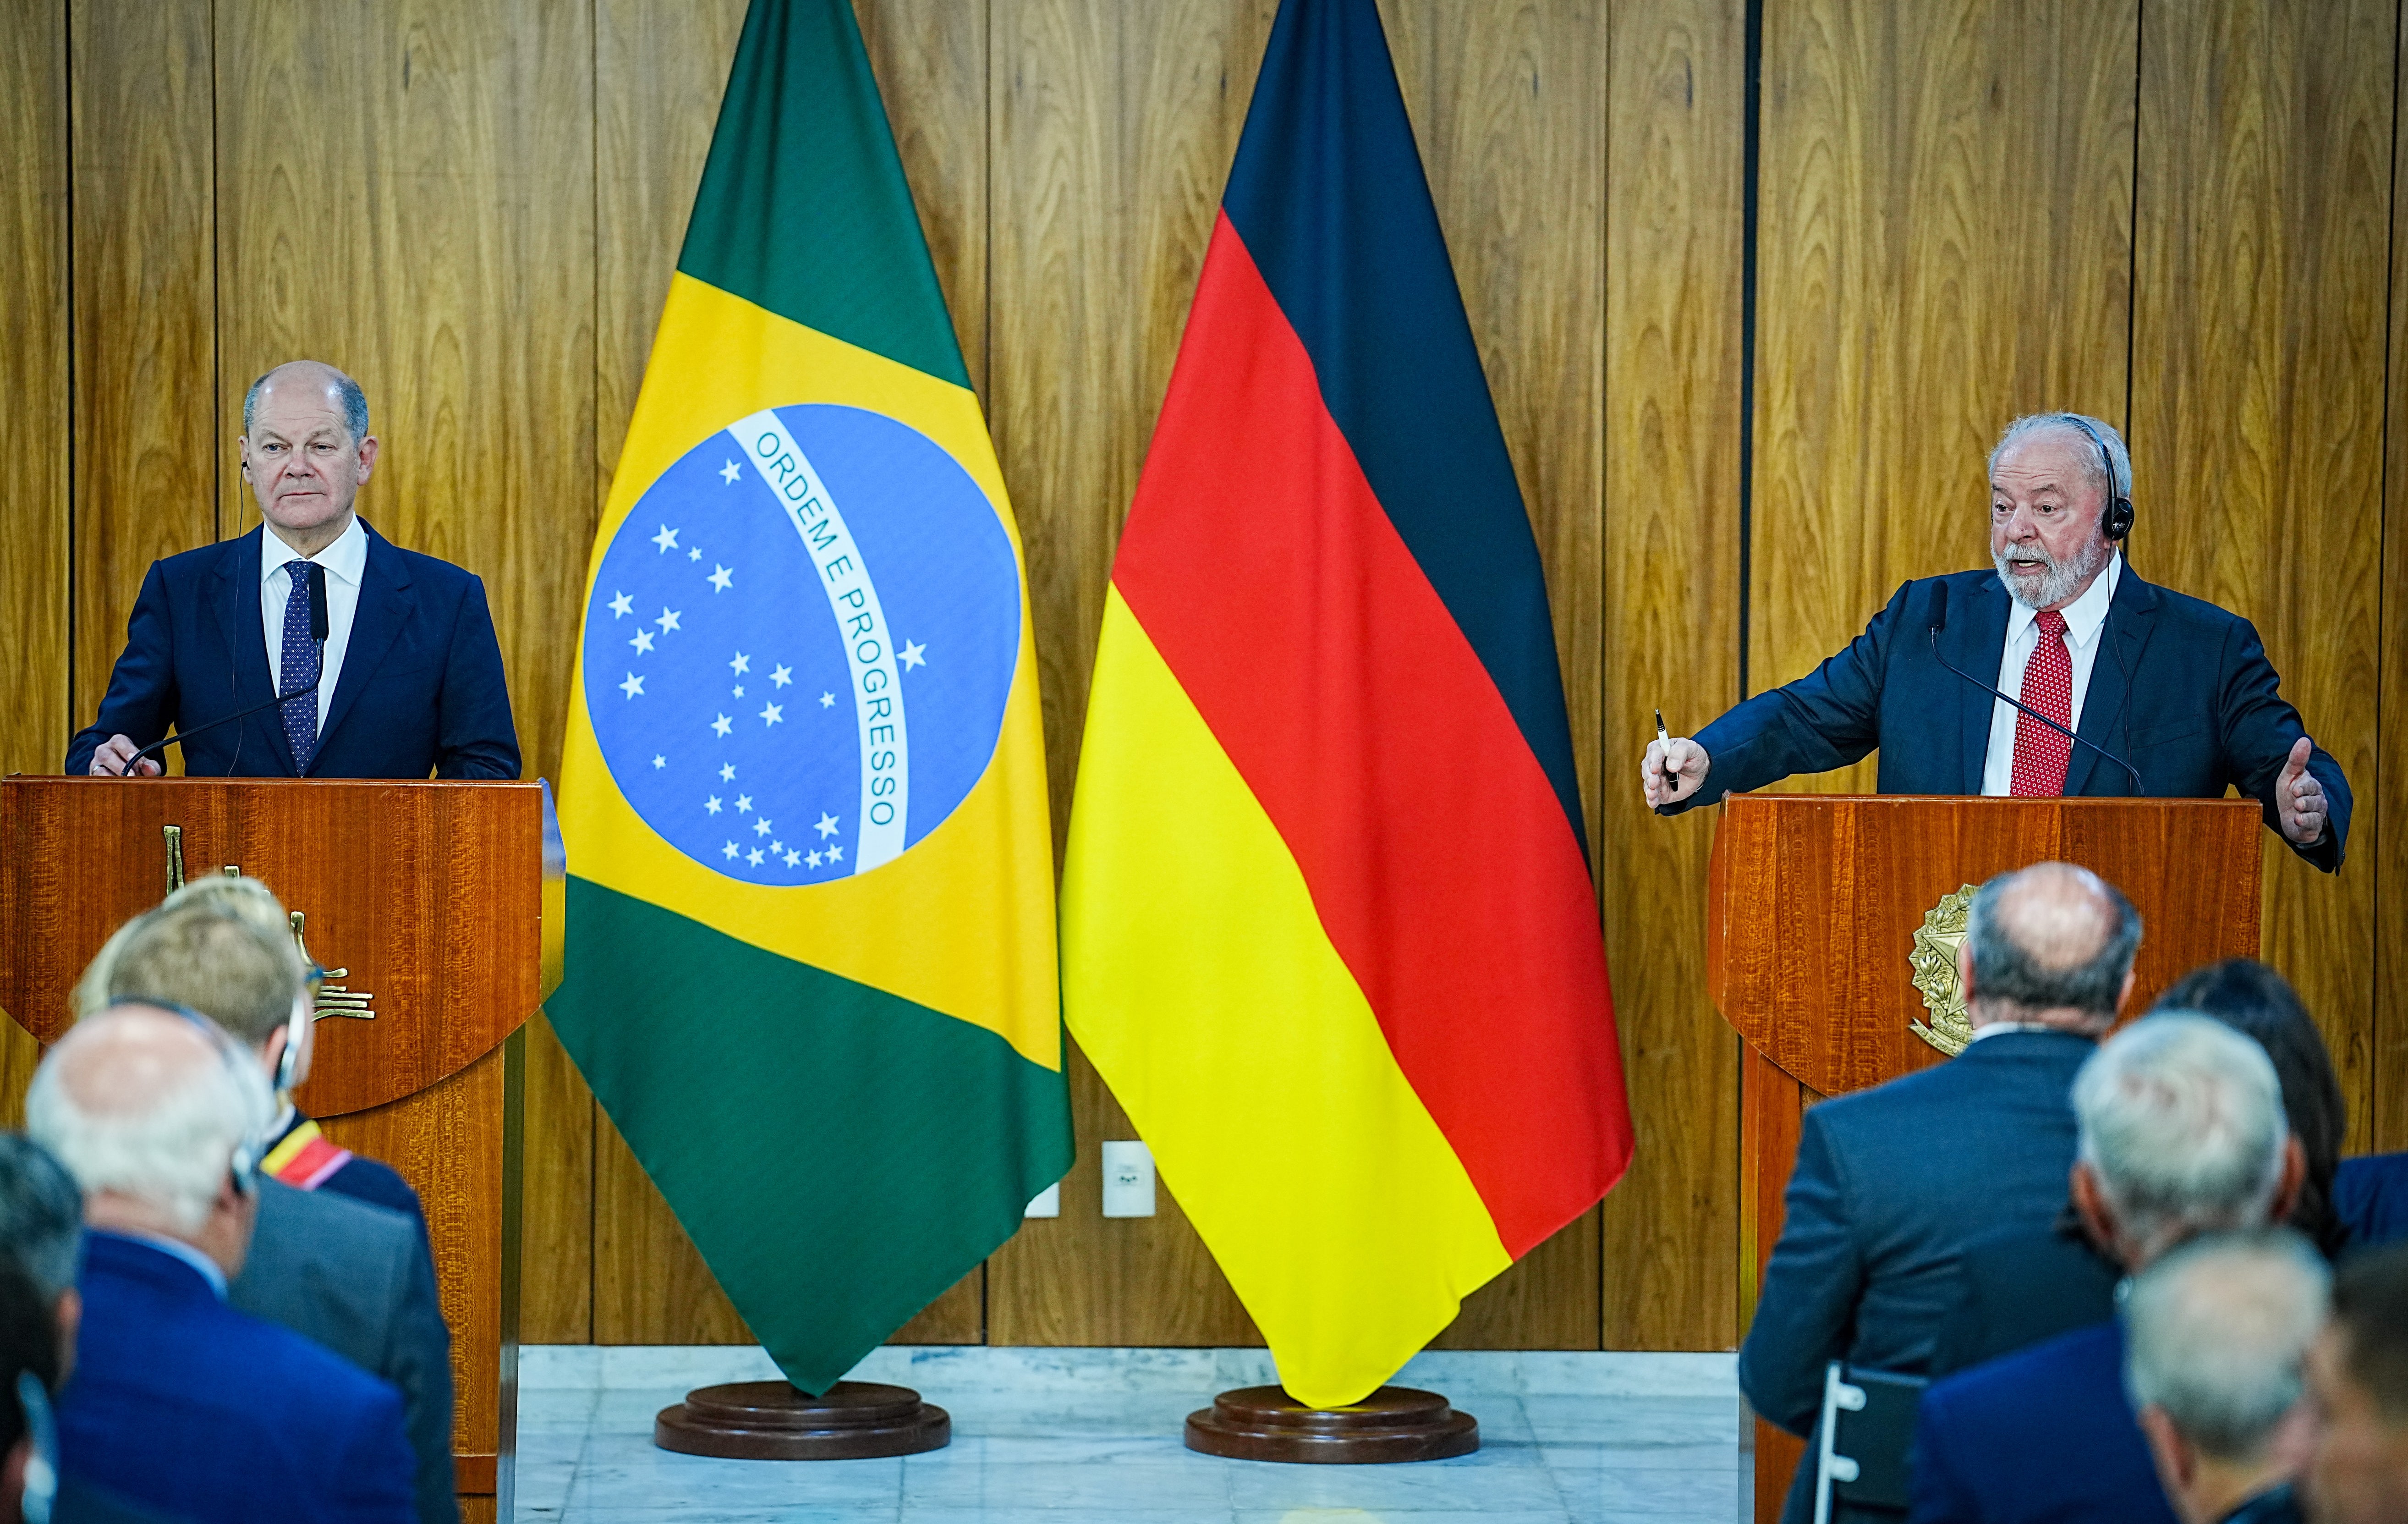 Südamerika-Reise des Kanzlers - Scholz optimistisch bezüglich EU-Mercosur-Abkommen